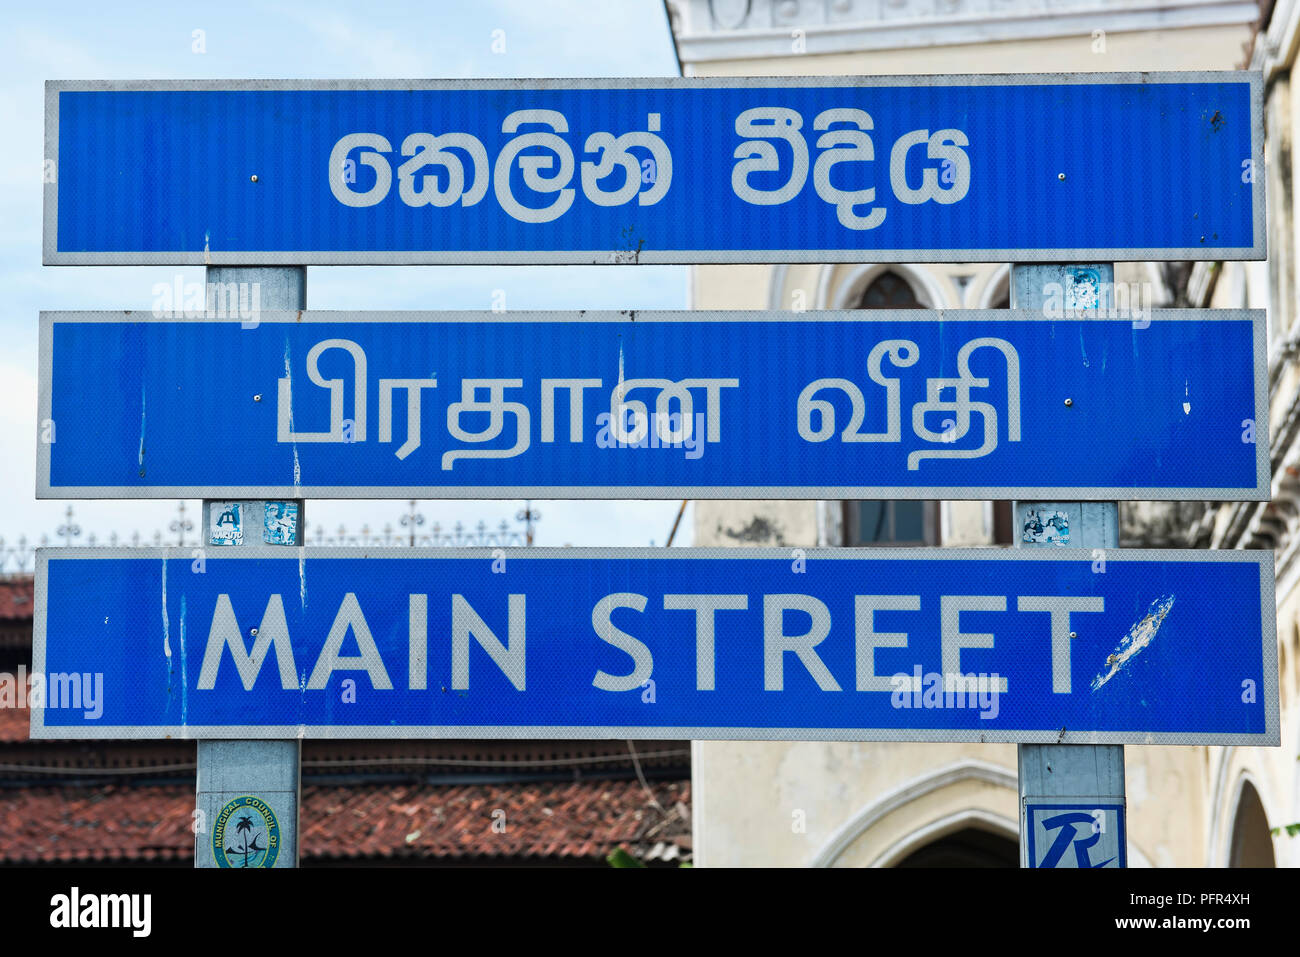 Sri Lanka, Colombo, Main Street sign, close-up Stock Photo